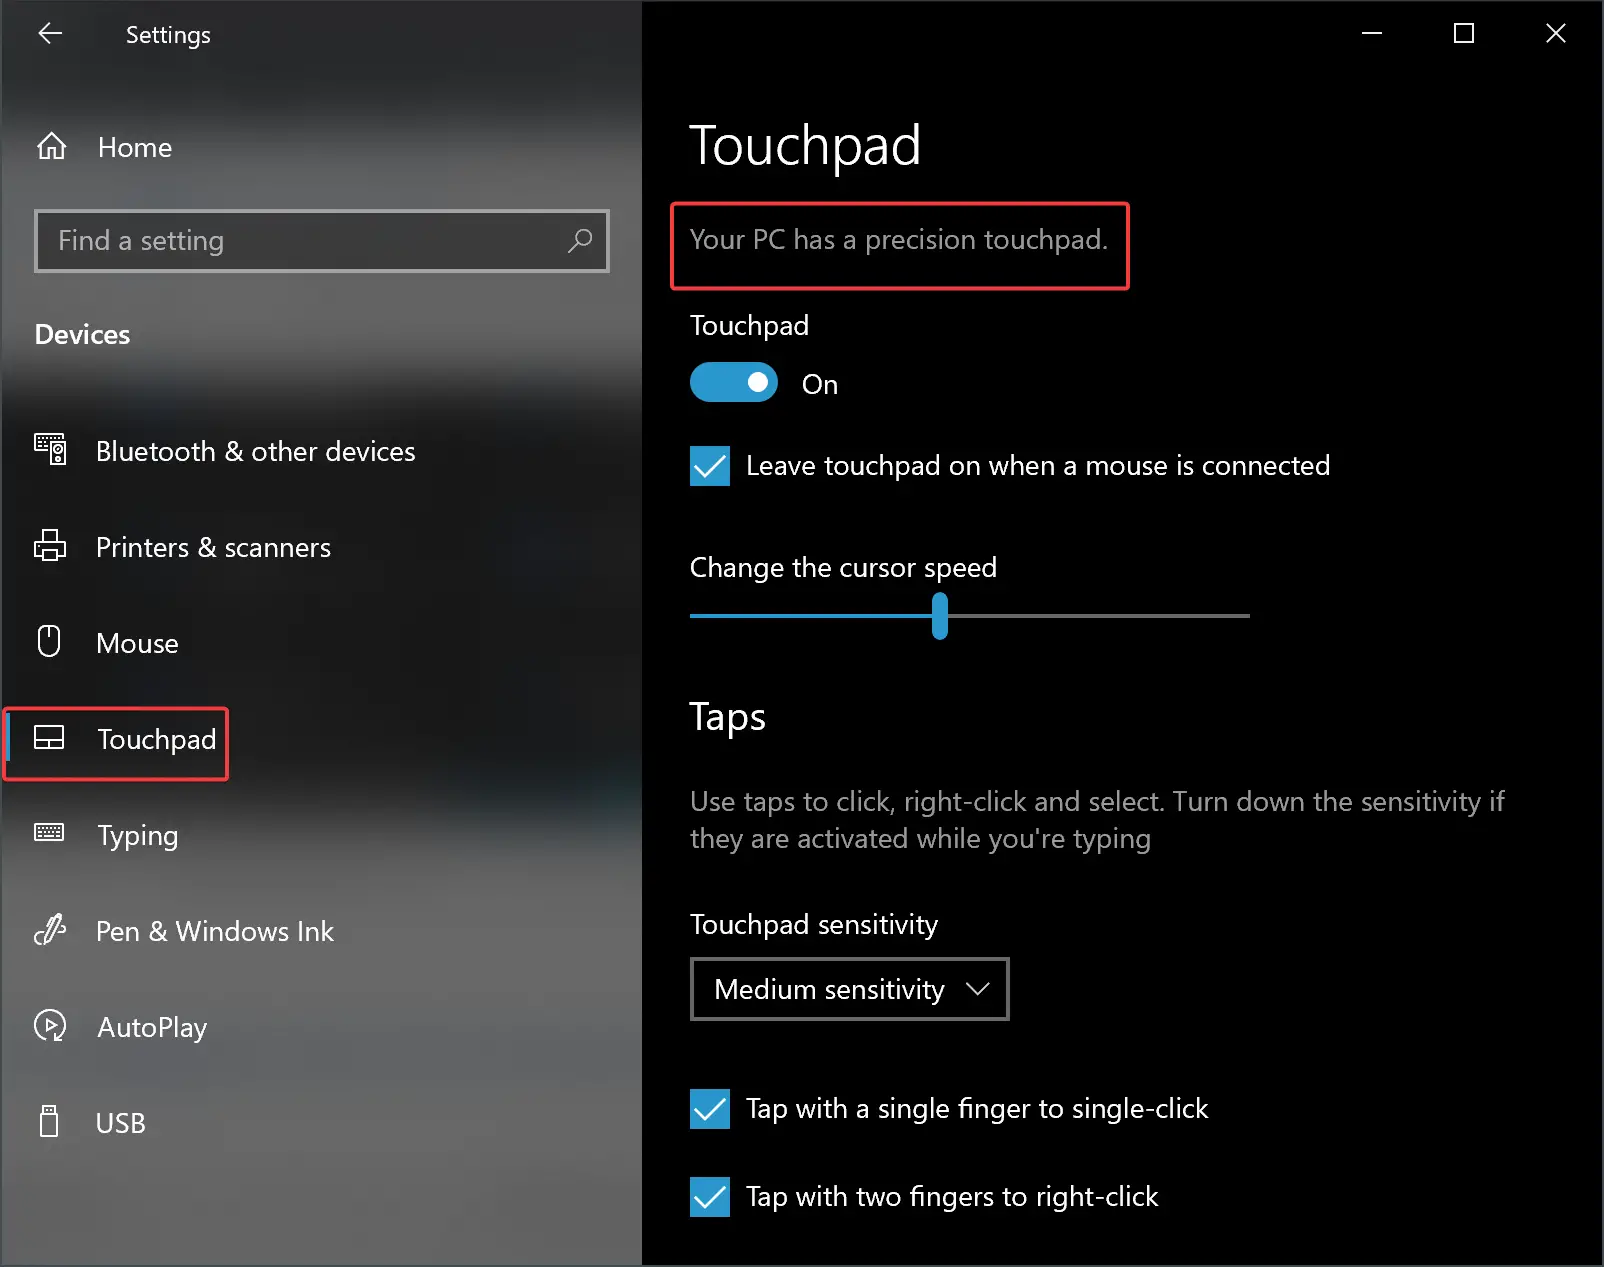 Touchpad settings menu